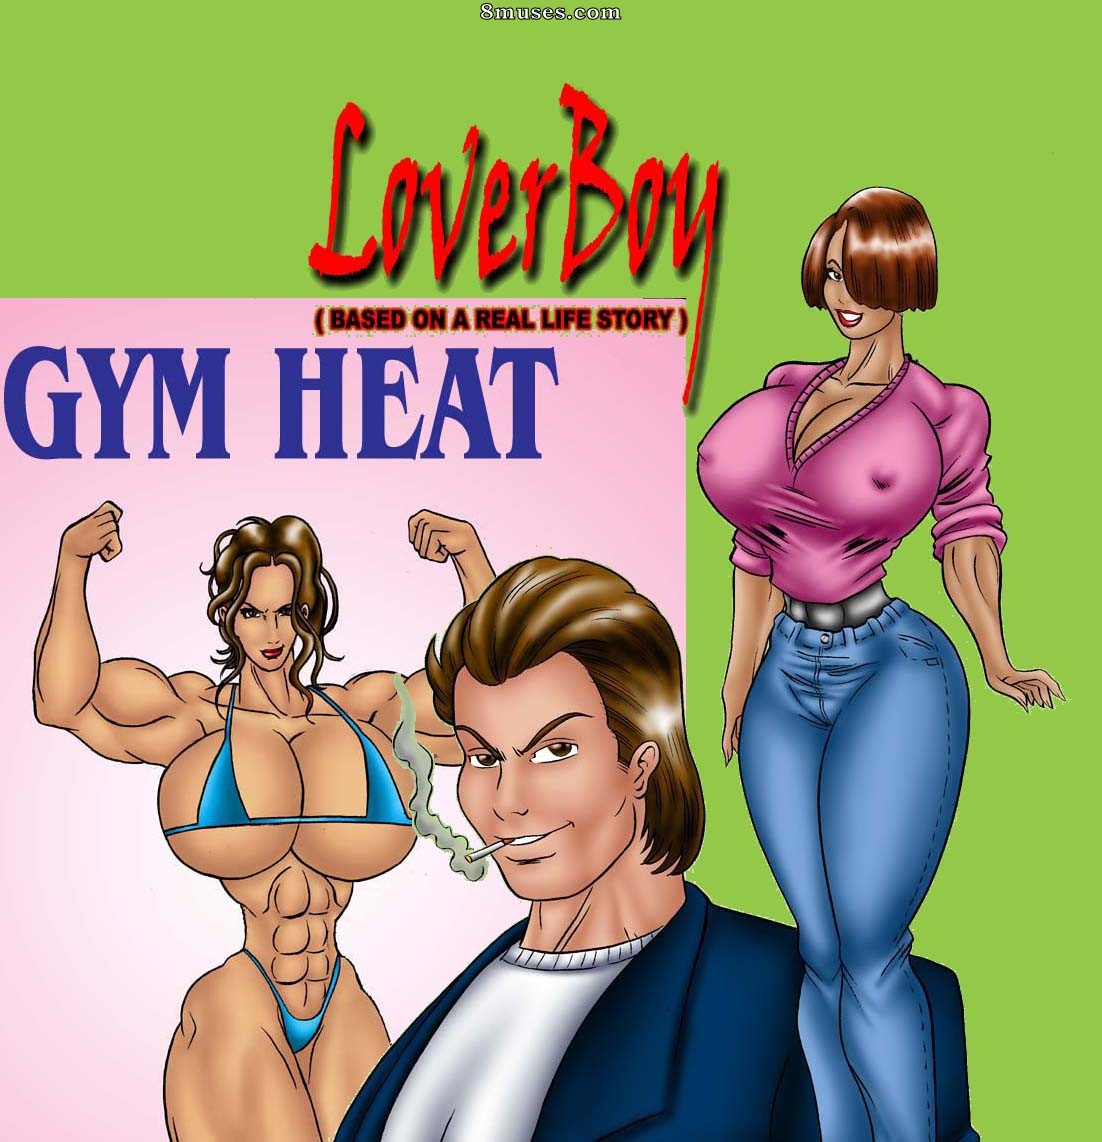 Real Life Cartoon Porn - Lover Boy and Gym Heat - 8muses Comics - Sex Comics and Porn Cartoons